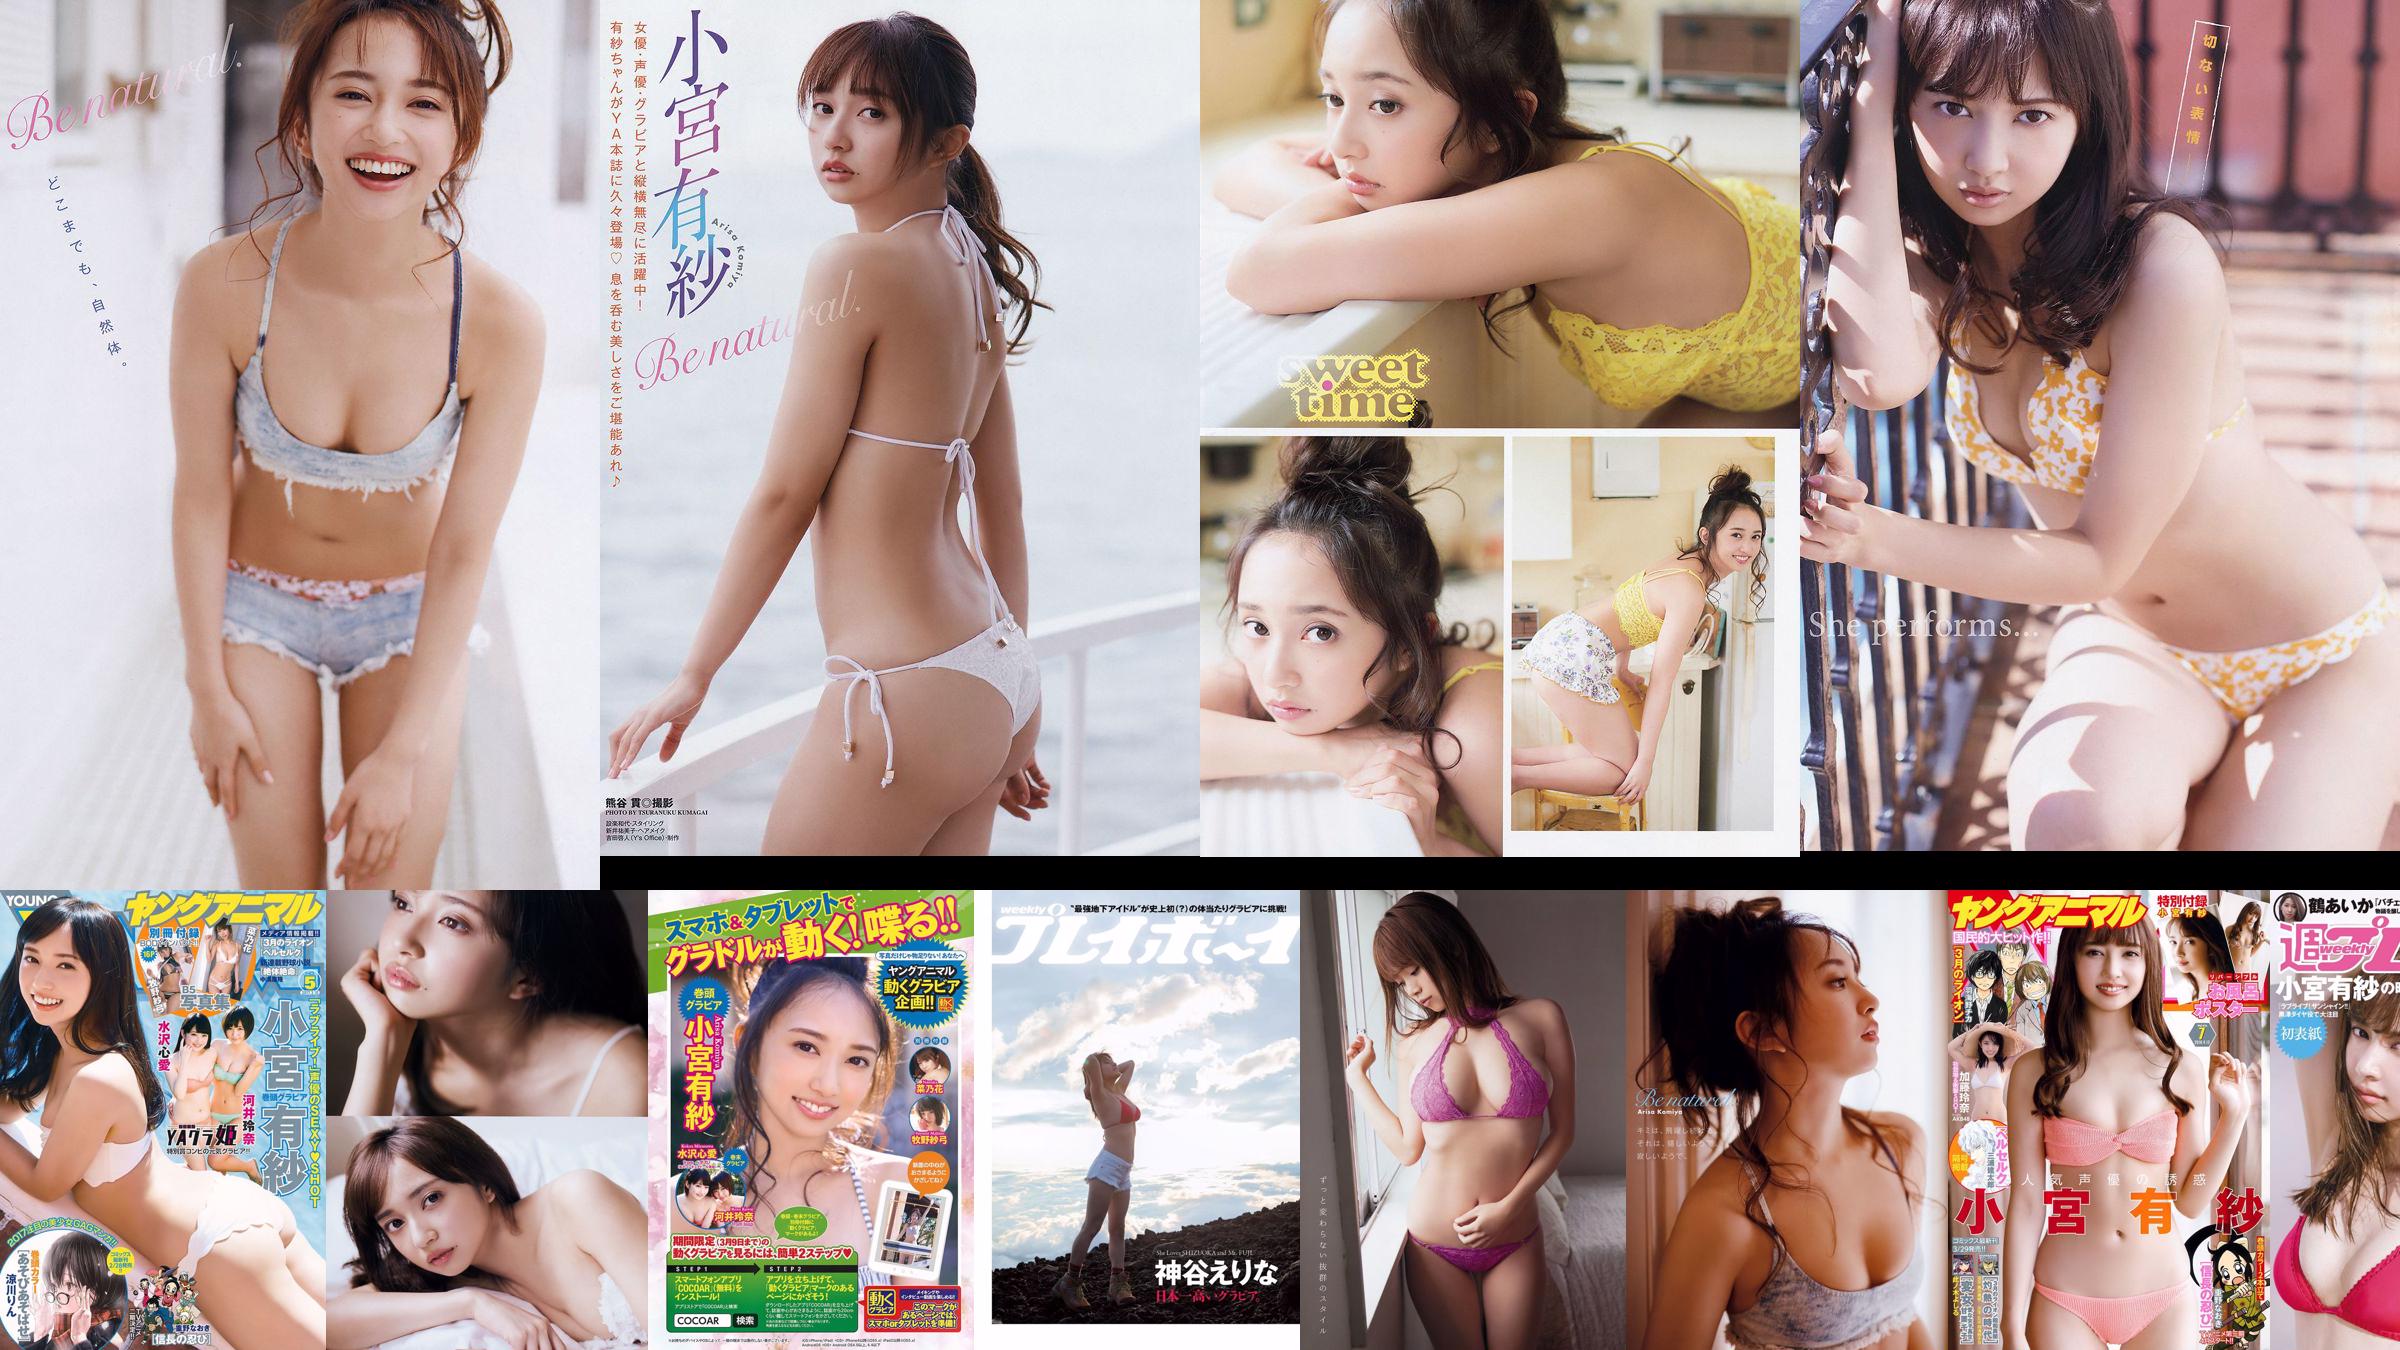 Arisa Komiya Aika Tsuru Sayaka Isoyama Kasumi Arimura Rina Otomo Sei Shiraishi Erina Kamiya [Weekly Playboy] 2017 No.41 照片 No.cb2cdd 第1頁